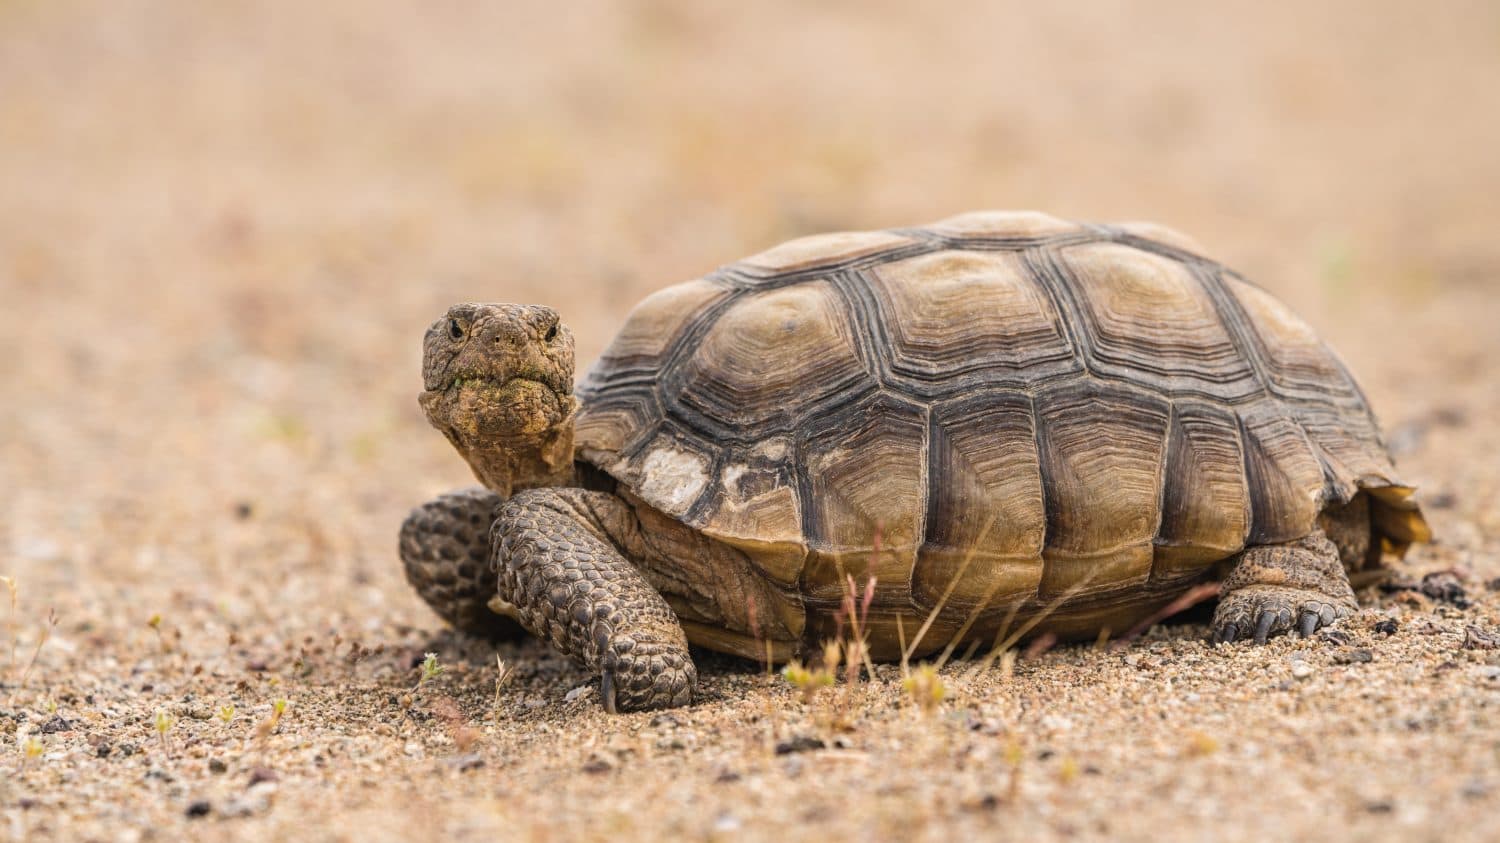 A wild desert tortoise or Gopherus agassizii, on the sandy desert floor in the Mojave Desert, California.